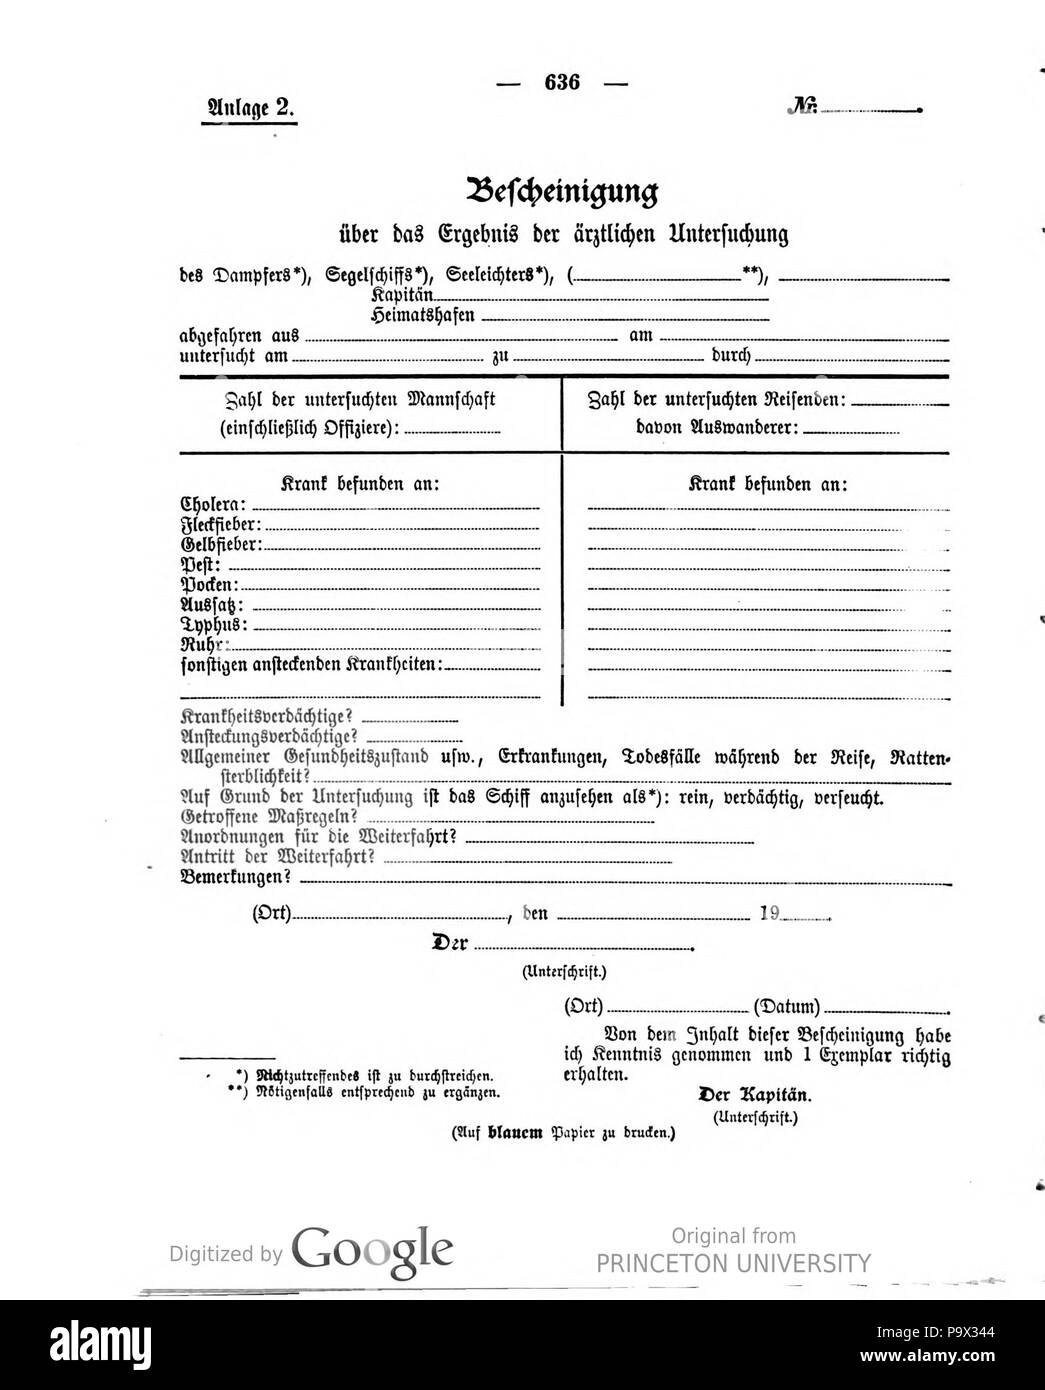 454 Deutsches Reichsgesetzblatt 1913 051 636 Stock Photo